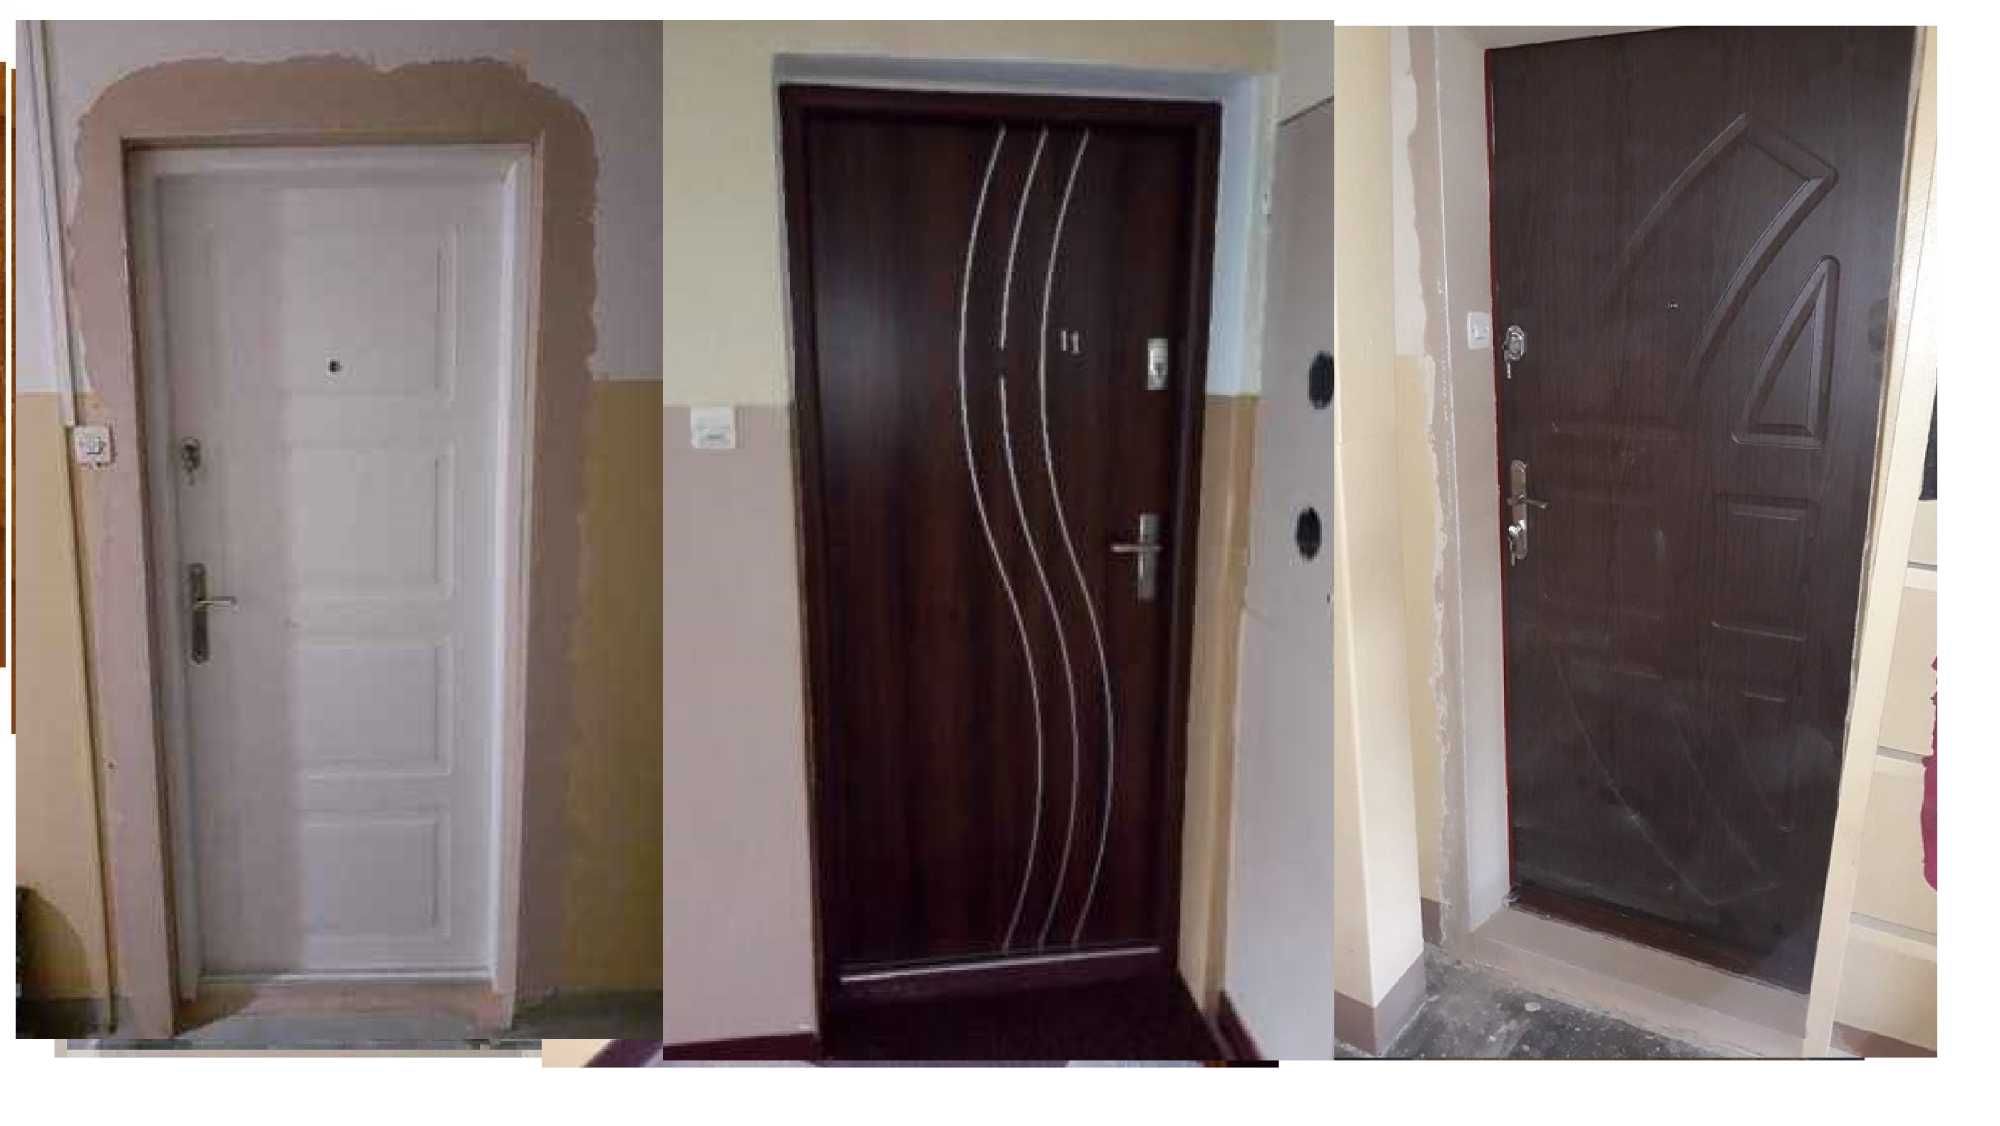 Drzwi do mieszkania wejściowe- zewnętrzne drewniane i metalowe